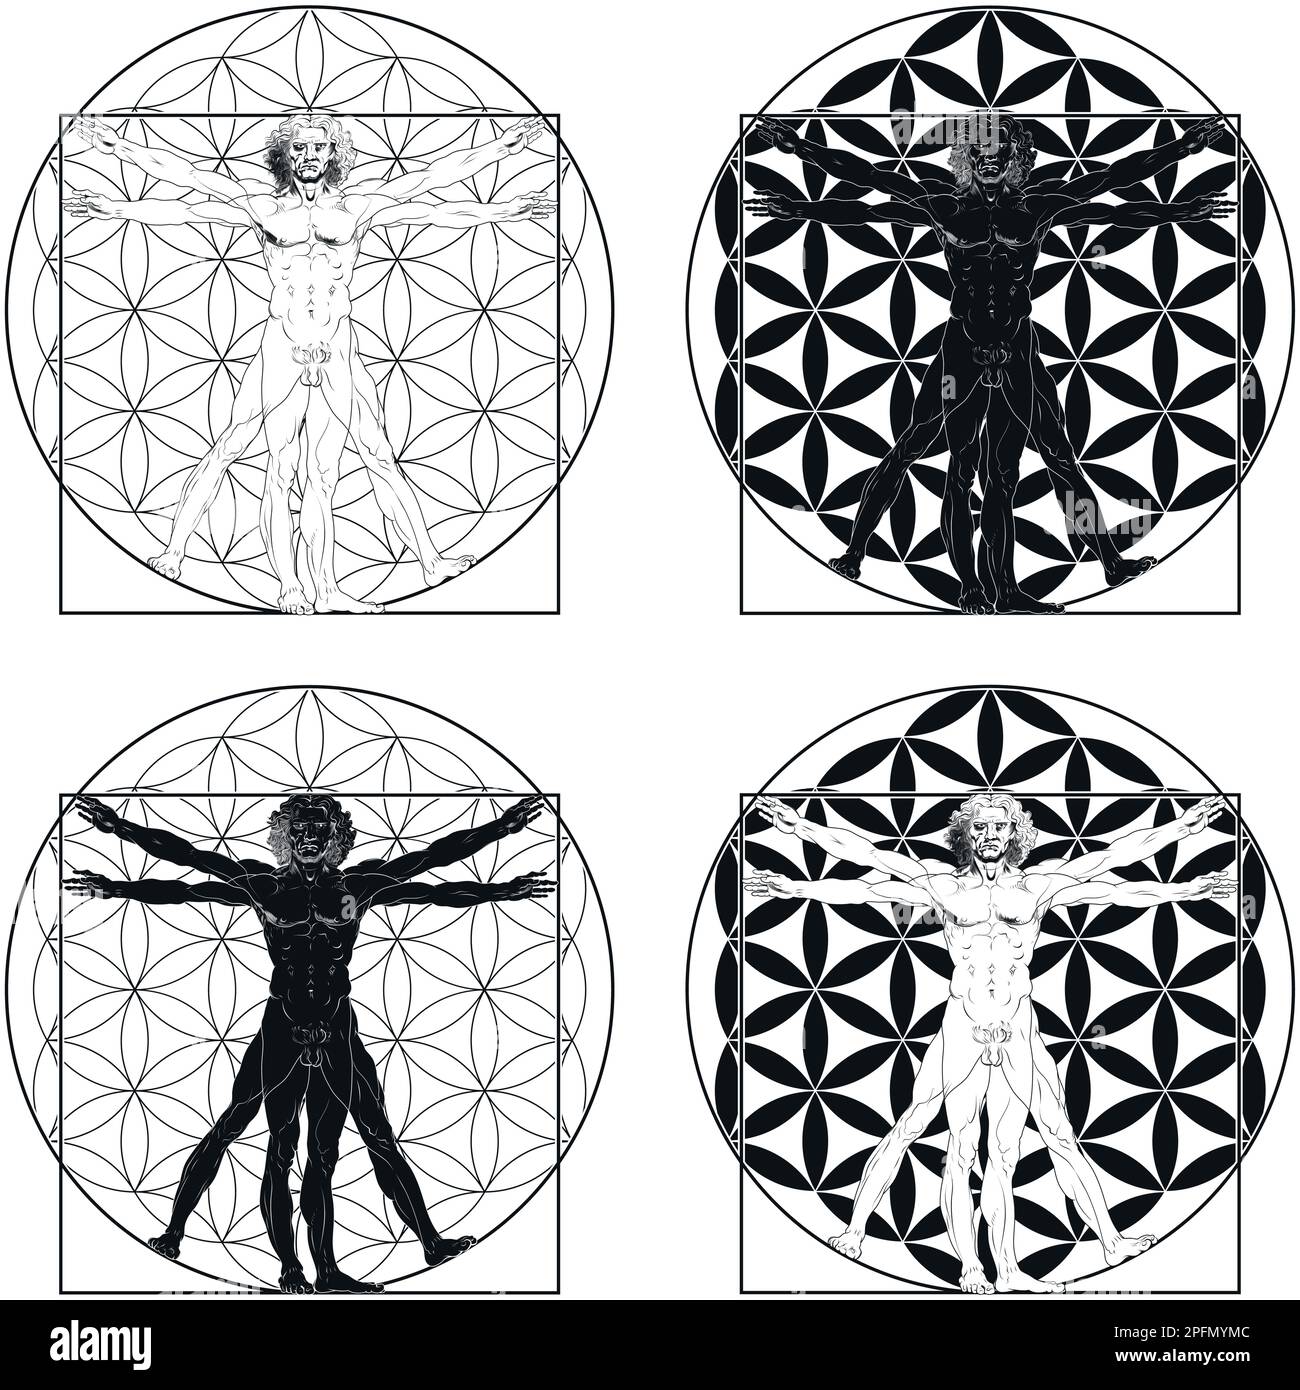 Vektor-Design von Vitruvian man von Leonardo da Vinci mit Blume des Lebens Hintergrund Stock Vektor